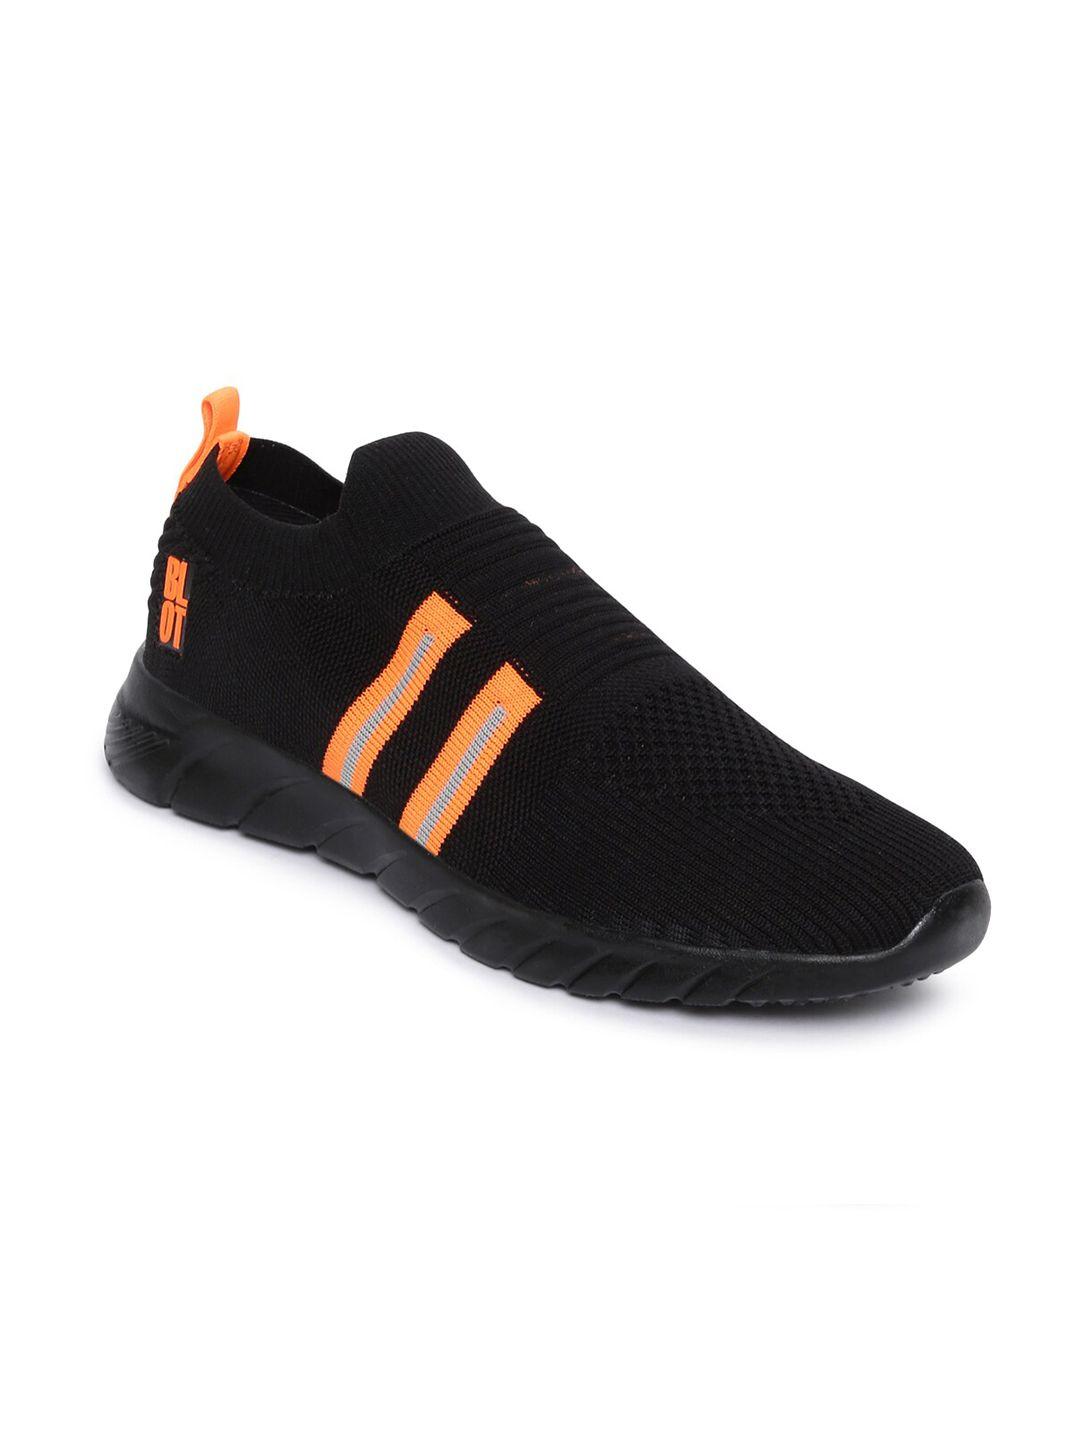 paragon men black & orange running shoes